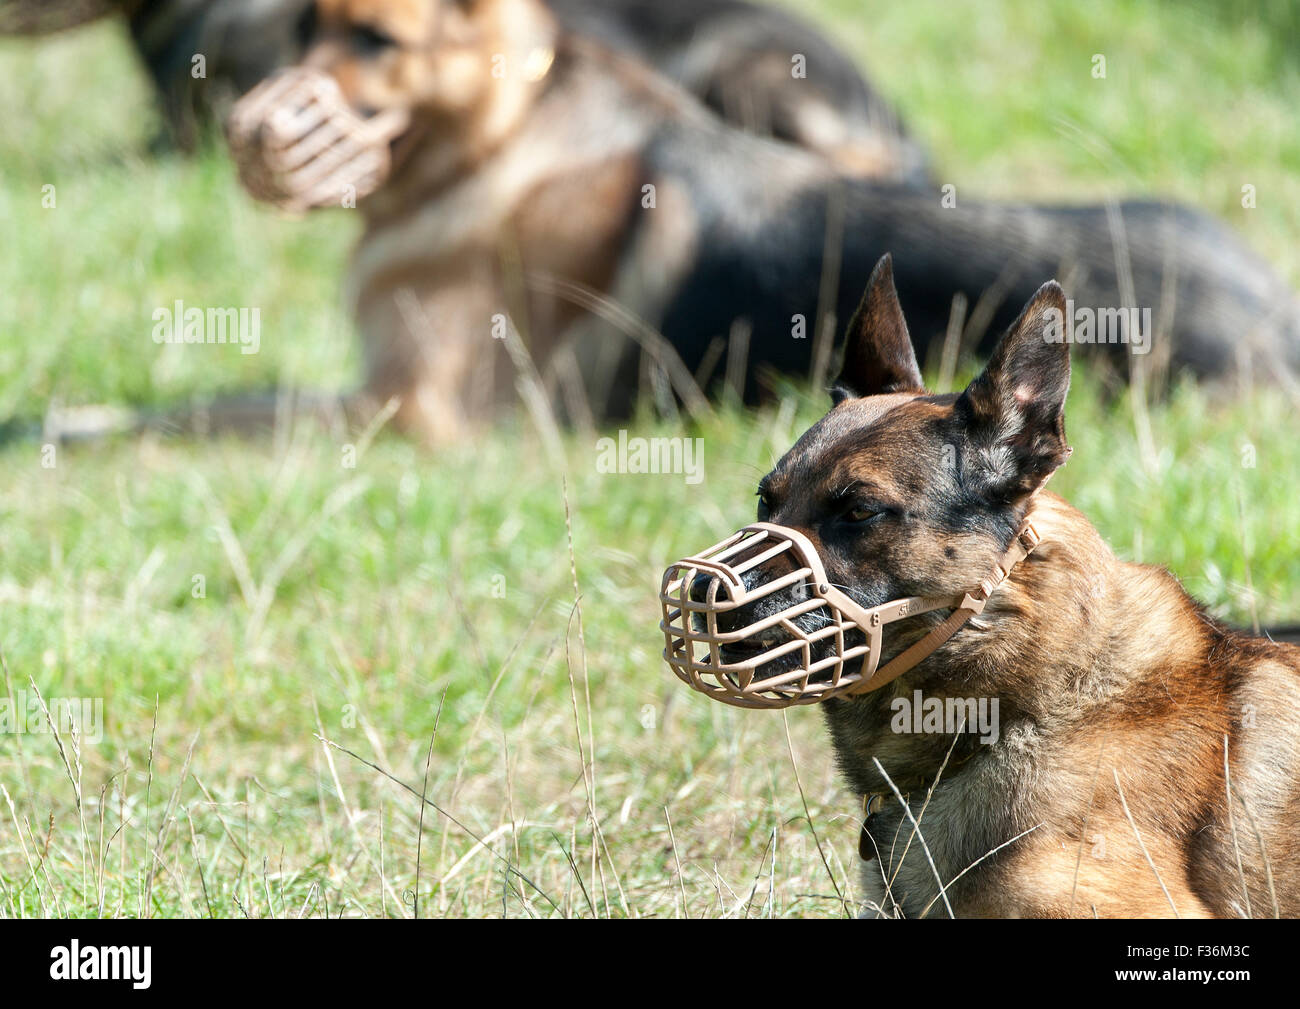 Das Bild zeigt einen Maulkorb tragen Wachmann Hunde während den Gehorsam und Kontrolle Test der Arbeitsgruppe Sicherheit Hund Wettbewerb. Stockfoto